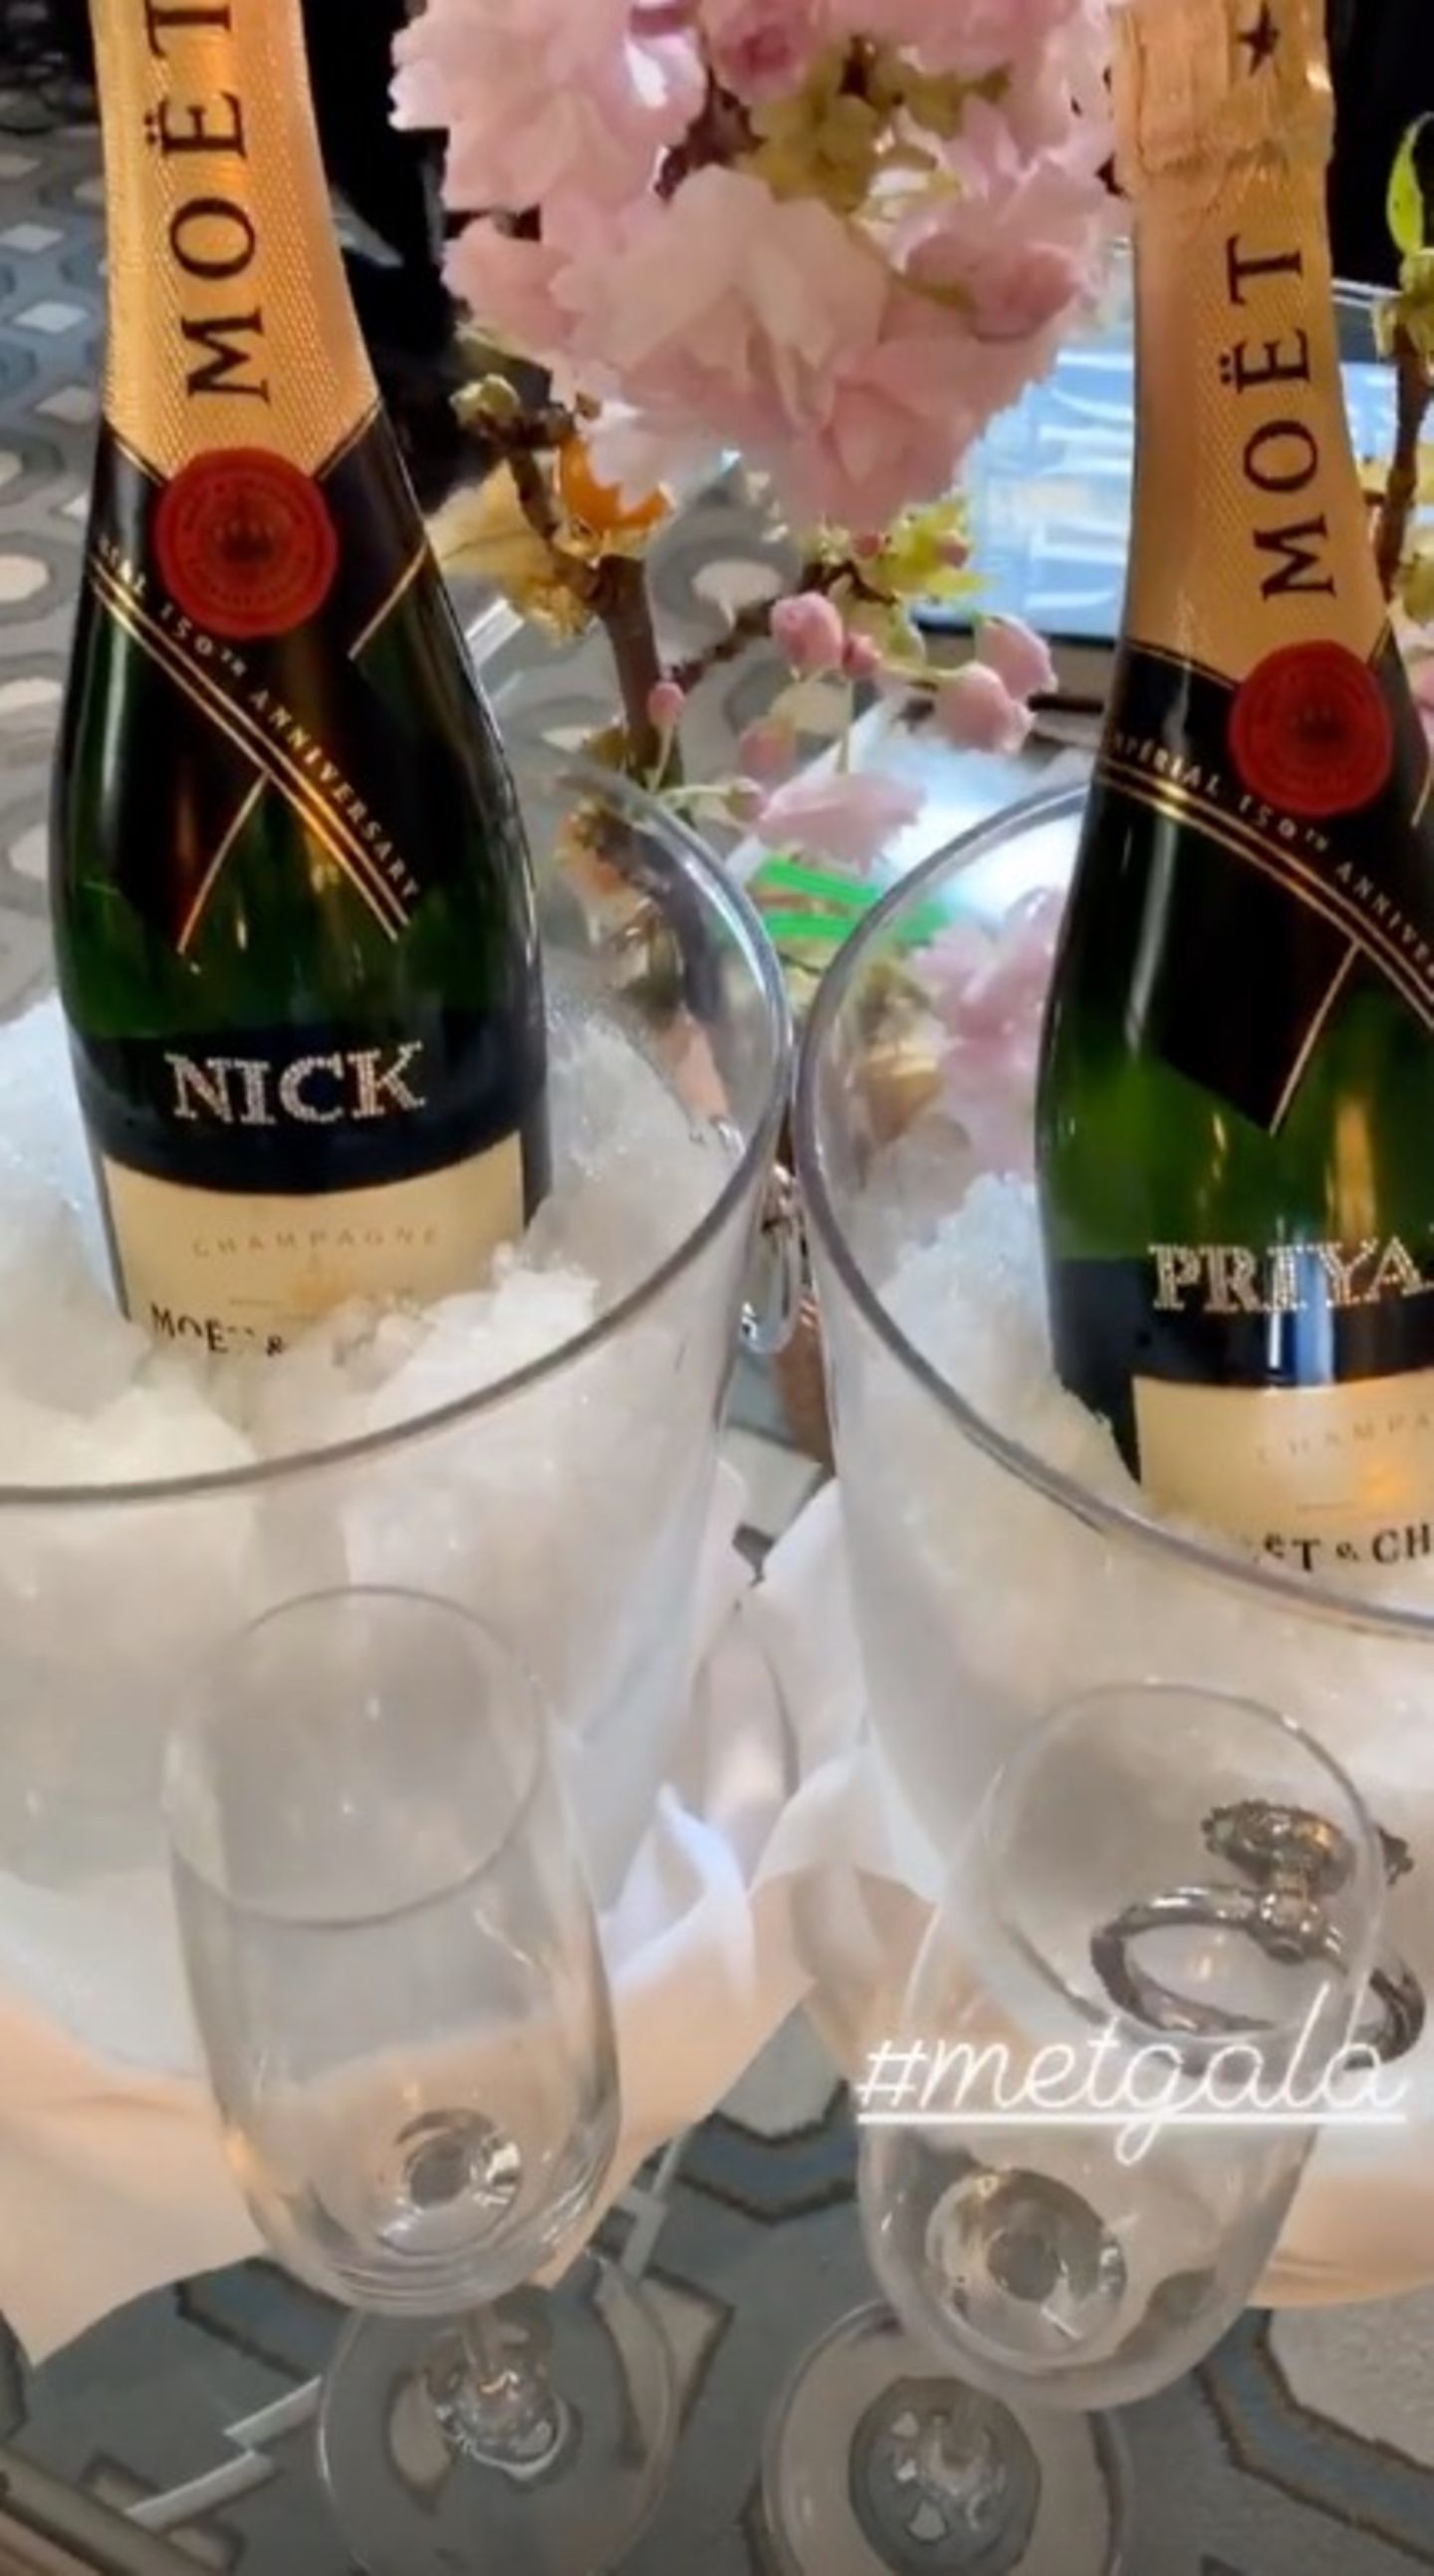 Vorglühen für die Met Gala: Priyanka Chopra und Nick Jonas genießen vor dem großen Auftritt ein Gläschen Champagner aus personalisierten Flaschen.